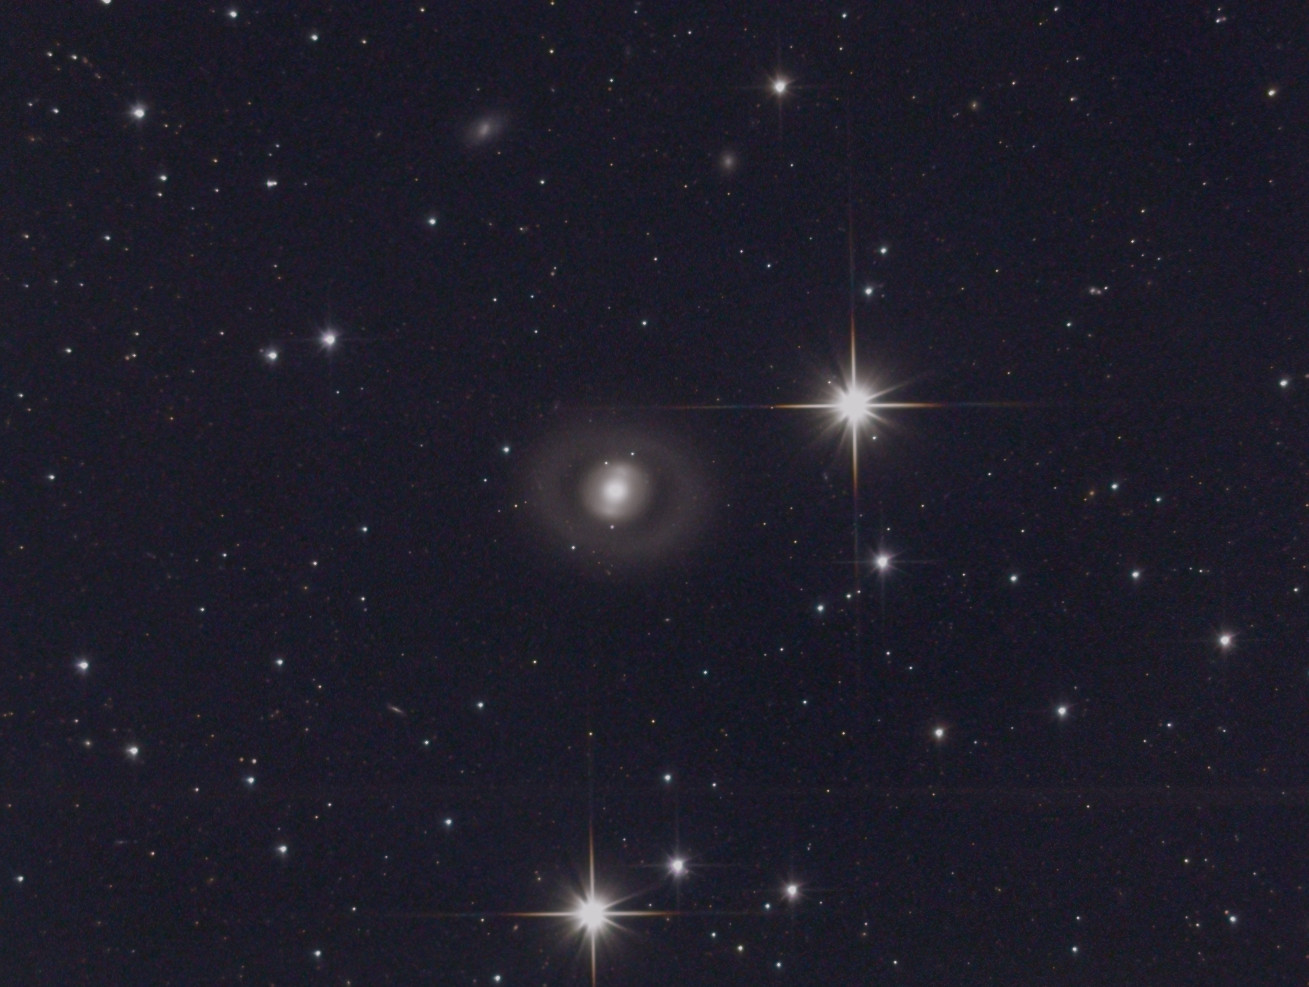 NGC 2859